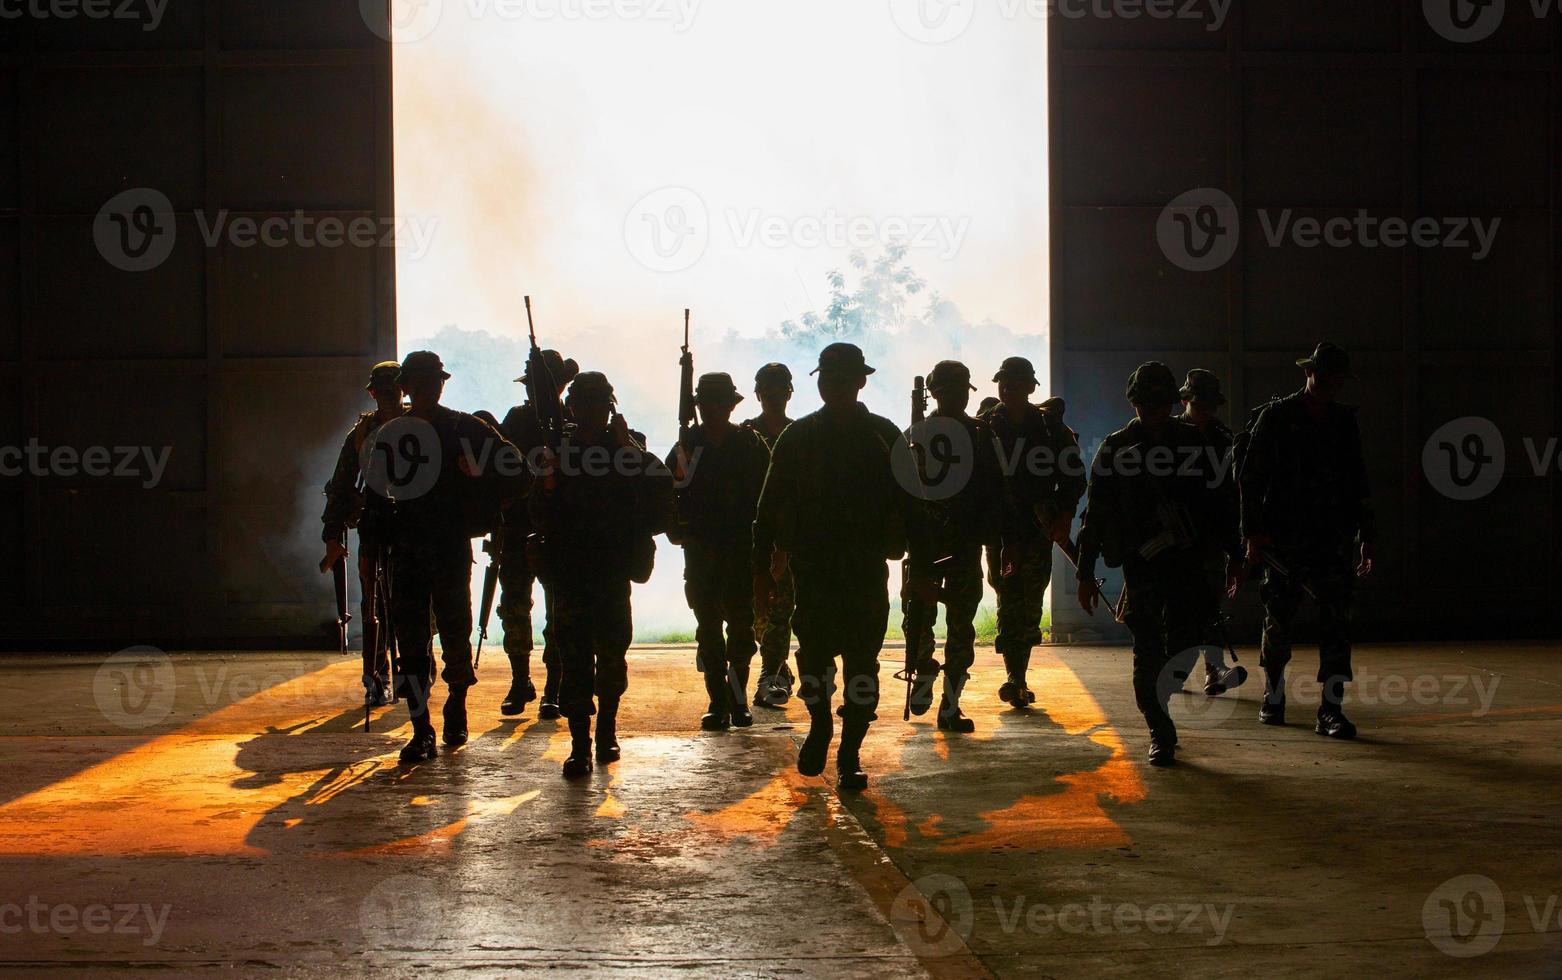 siluetas de soldados del ejército en la niebla contra una puesta de sol, equipo de marines en acción, rodeado de fuego y humo, disparando con rifle de asalto y ametralladora, atacando al enemigo foto